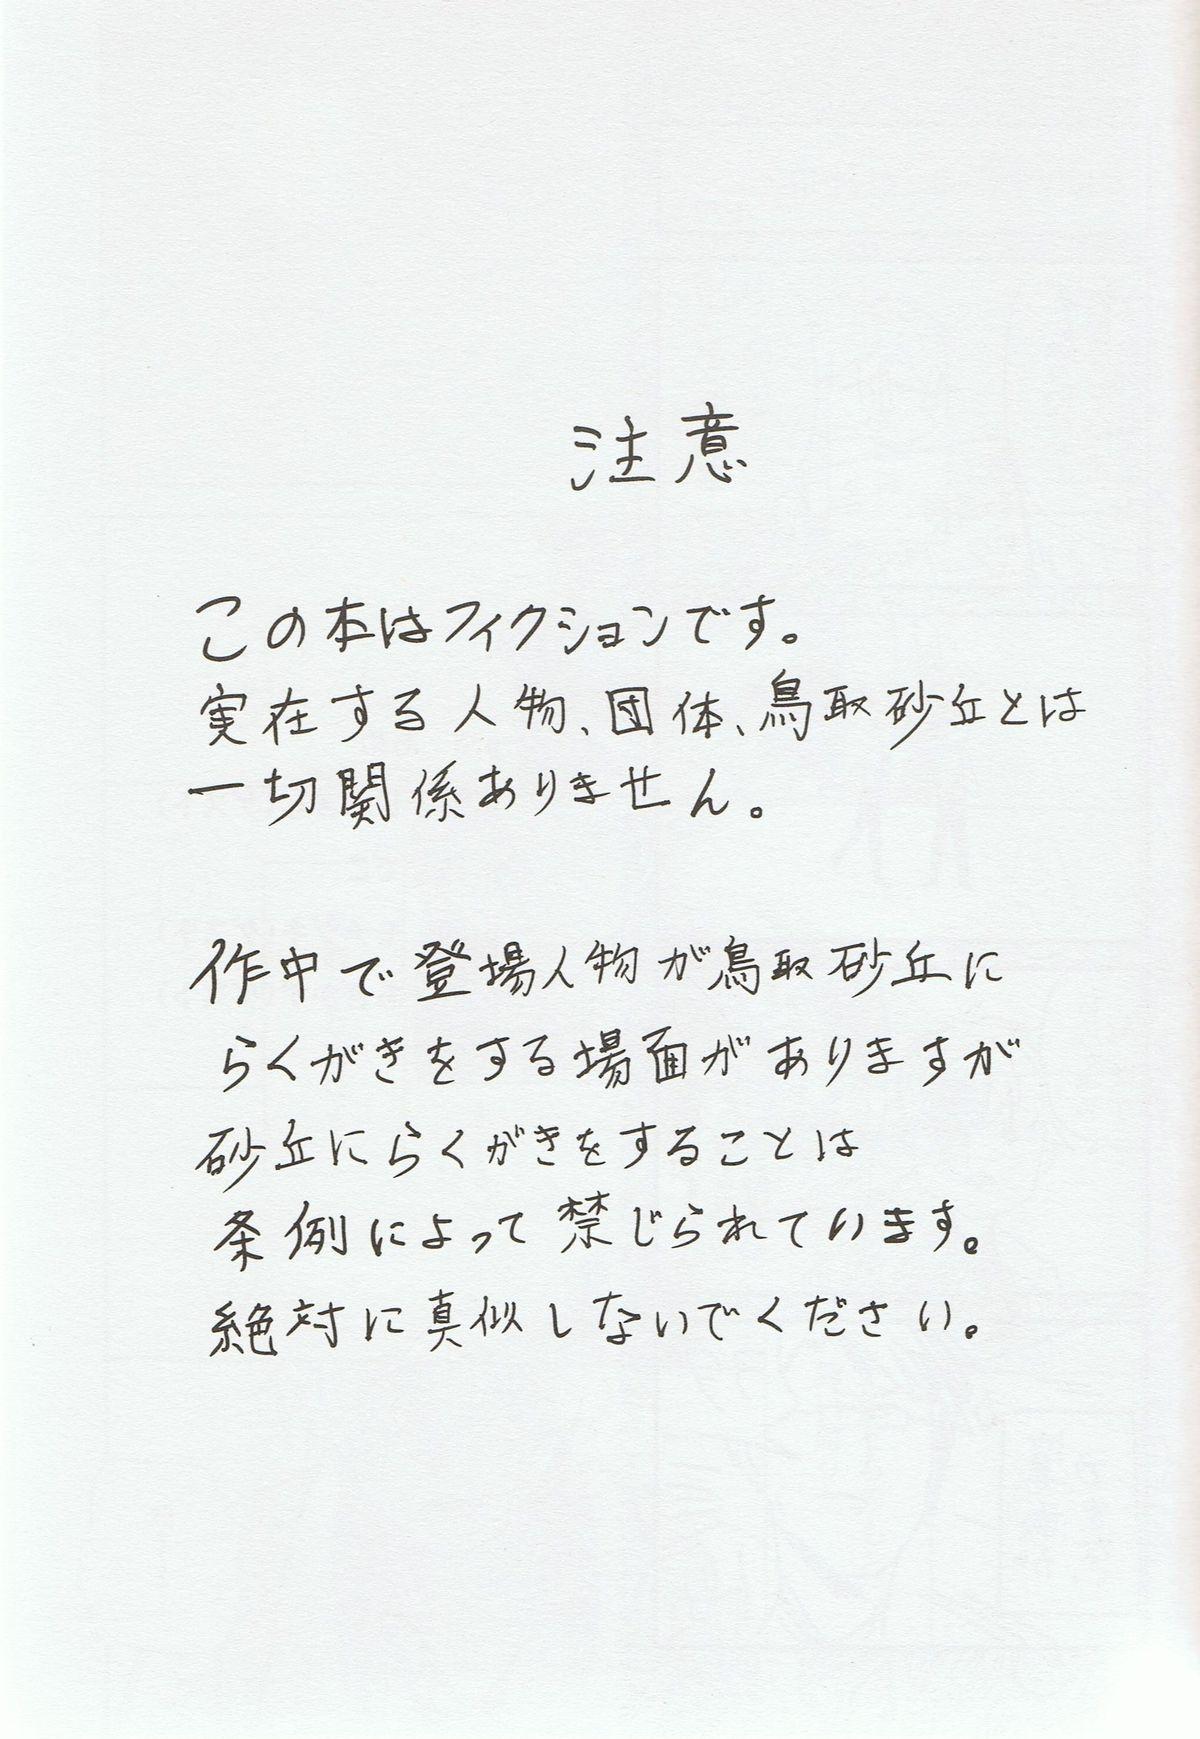 Pain Sou da, Tottori Sakyuu Ikou. - Free Hardon - Page 2